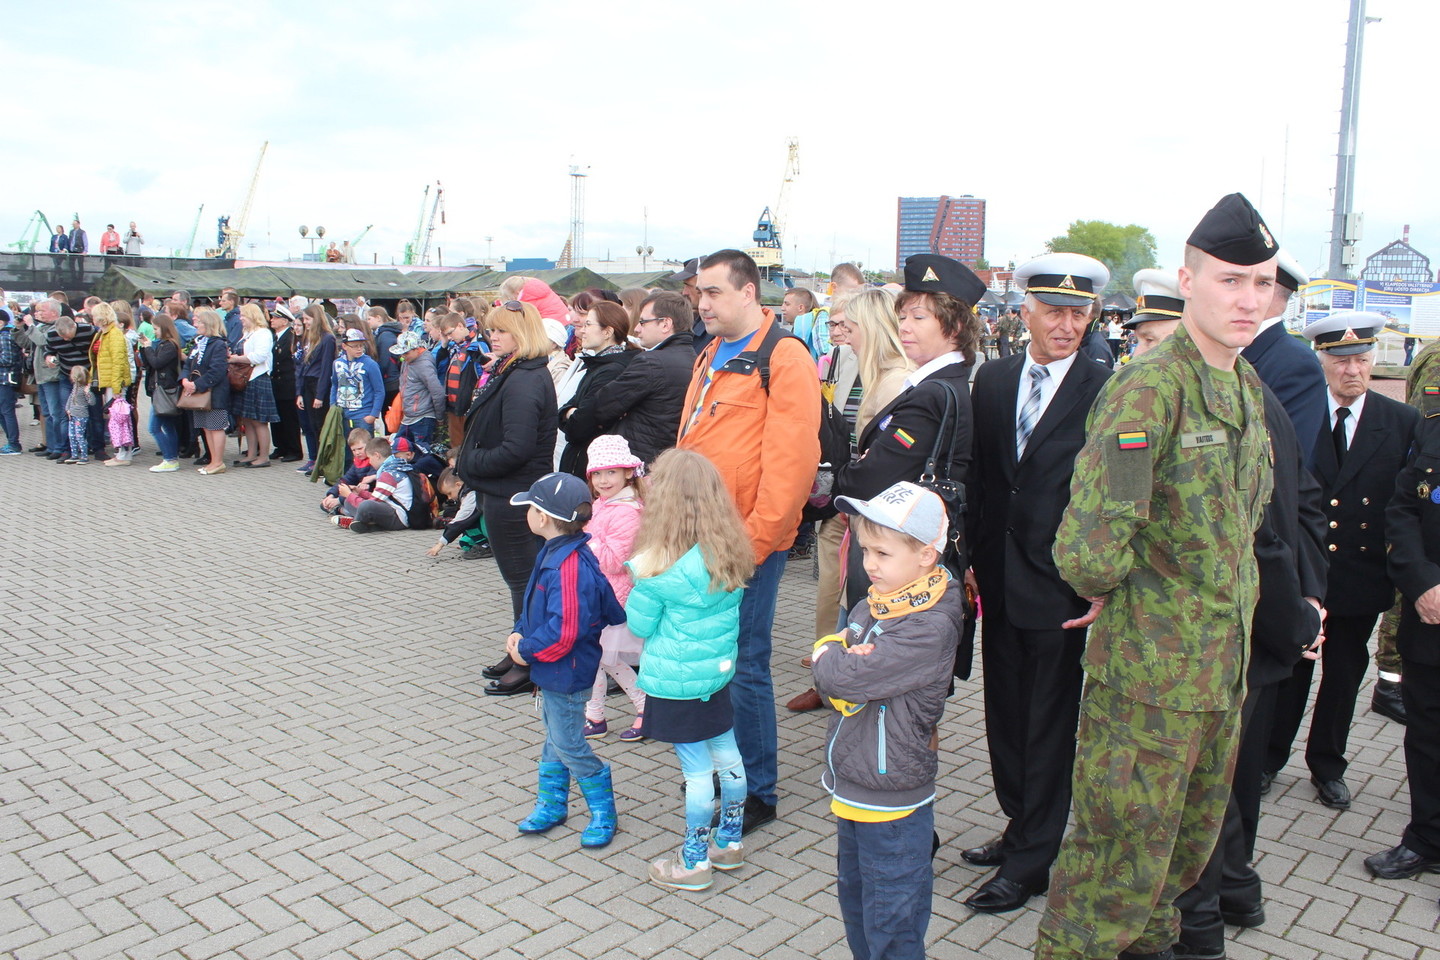 Kruizinių laivų terminale susirinkusieji stebėjo priesaikos tarnauti Lietuvai ceremoniją.<br>G.Pilaičio nuotr.